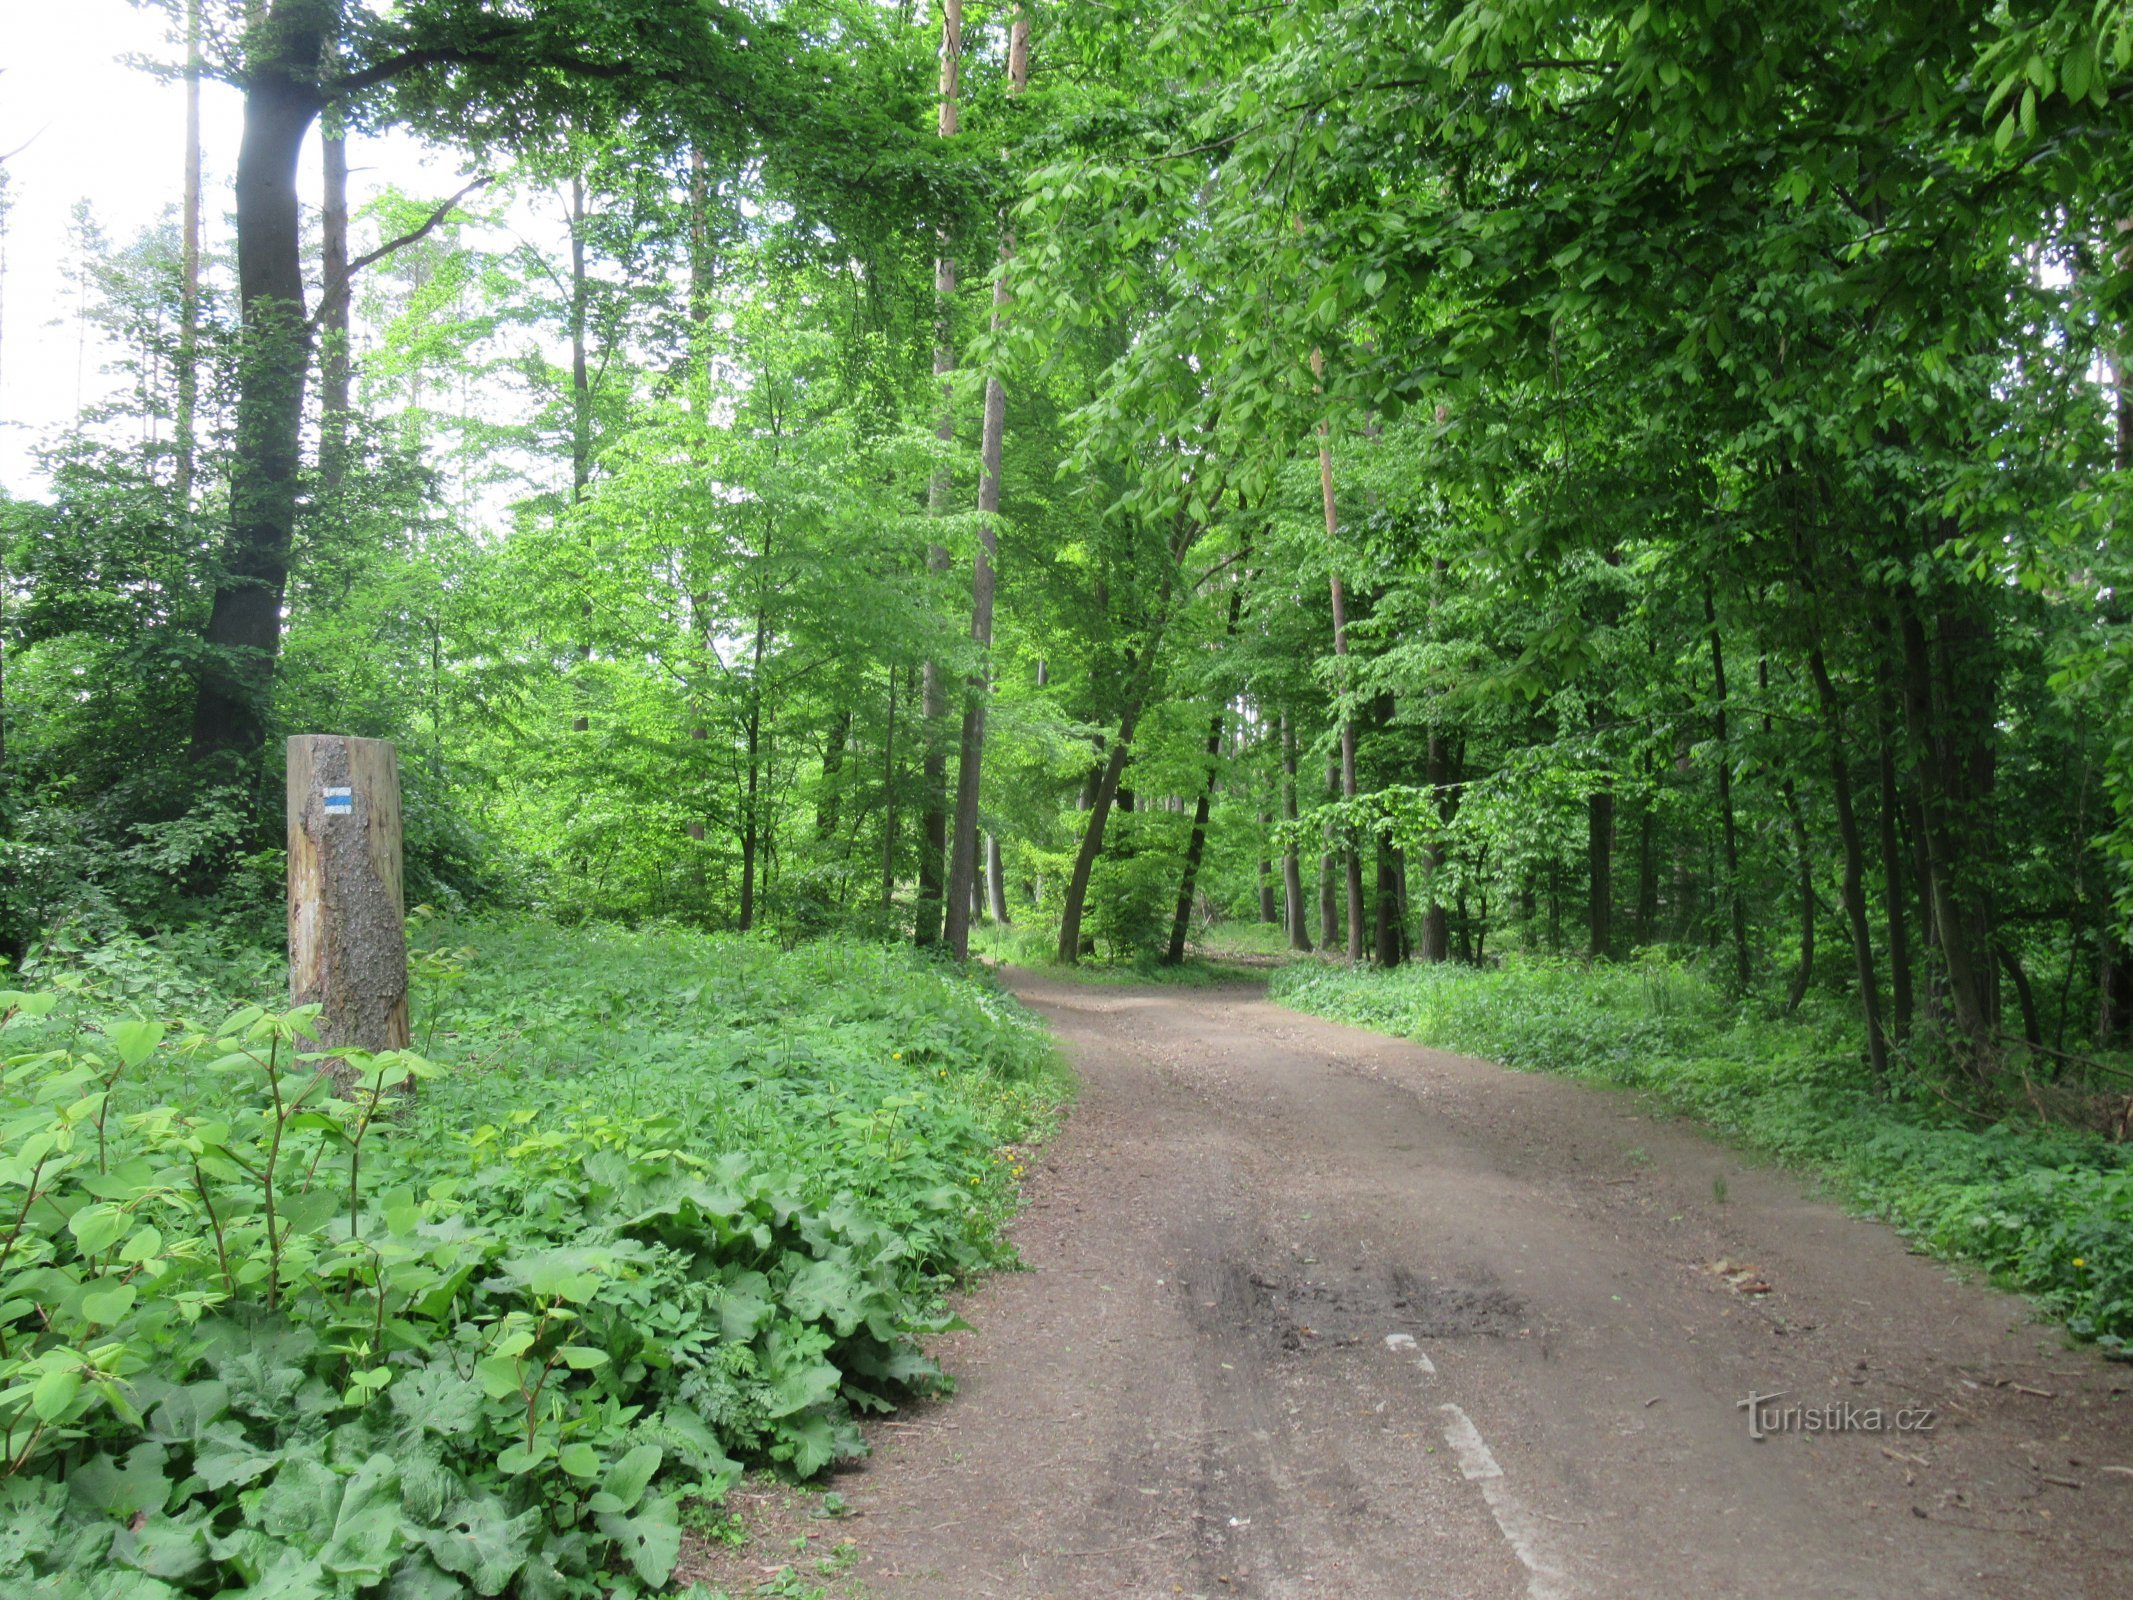 Маршрут в основном проходит через лиственные леса.